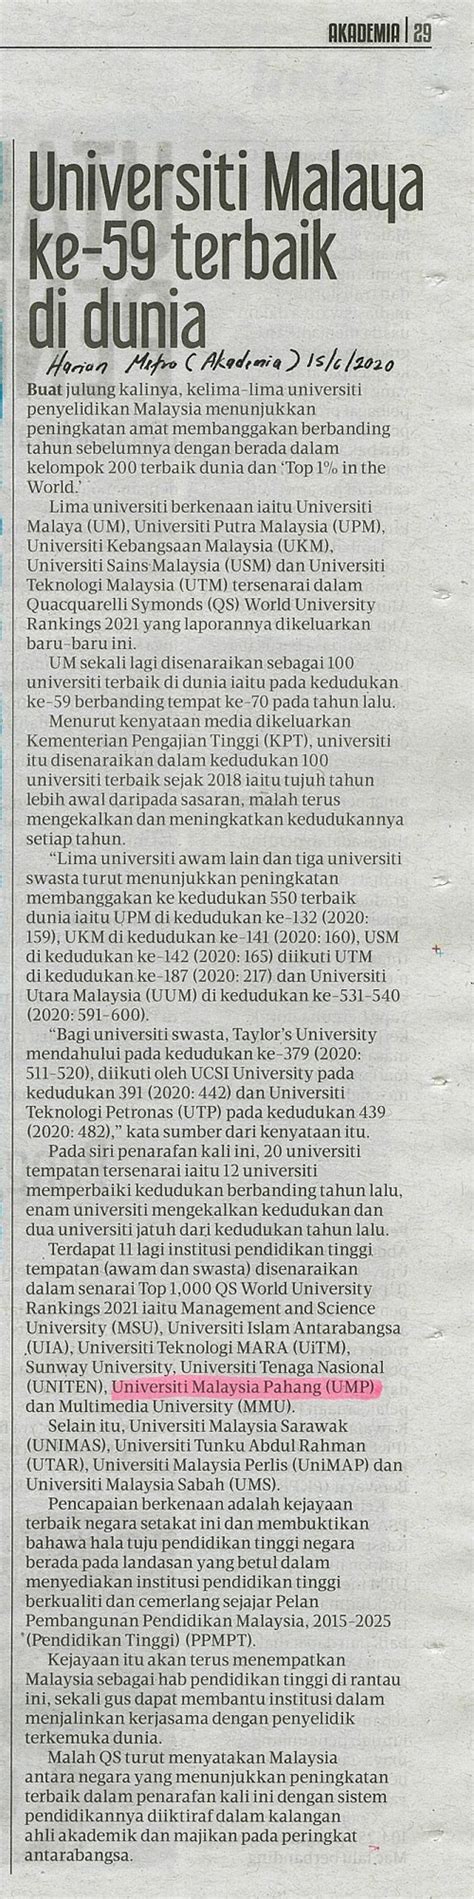 Universiti Malaya Ke 59 Terbaik Di DuniaUMPSA News